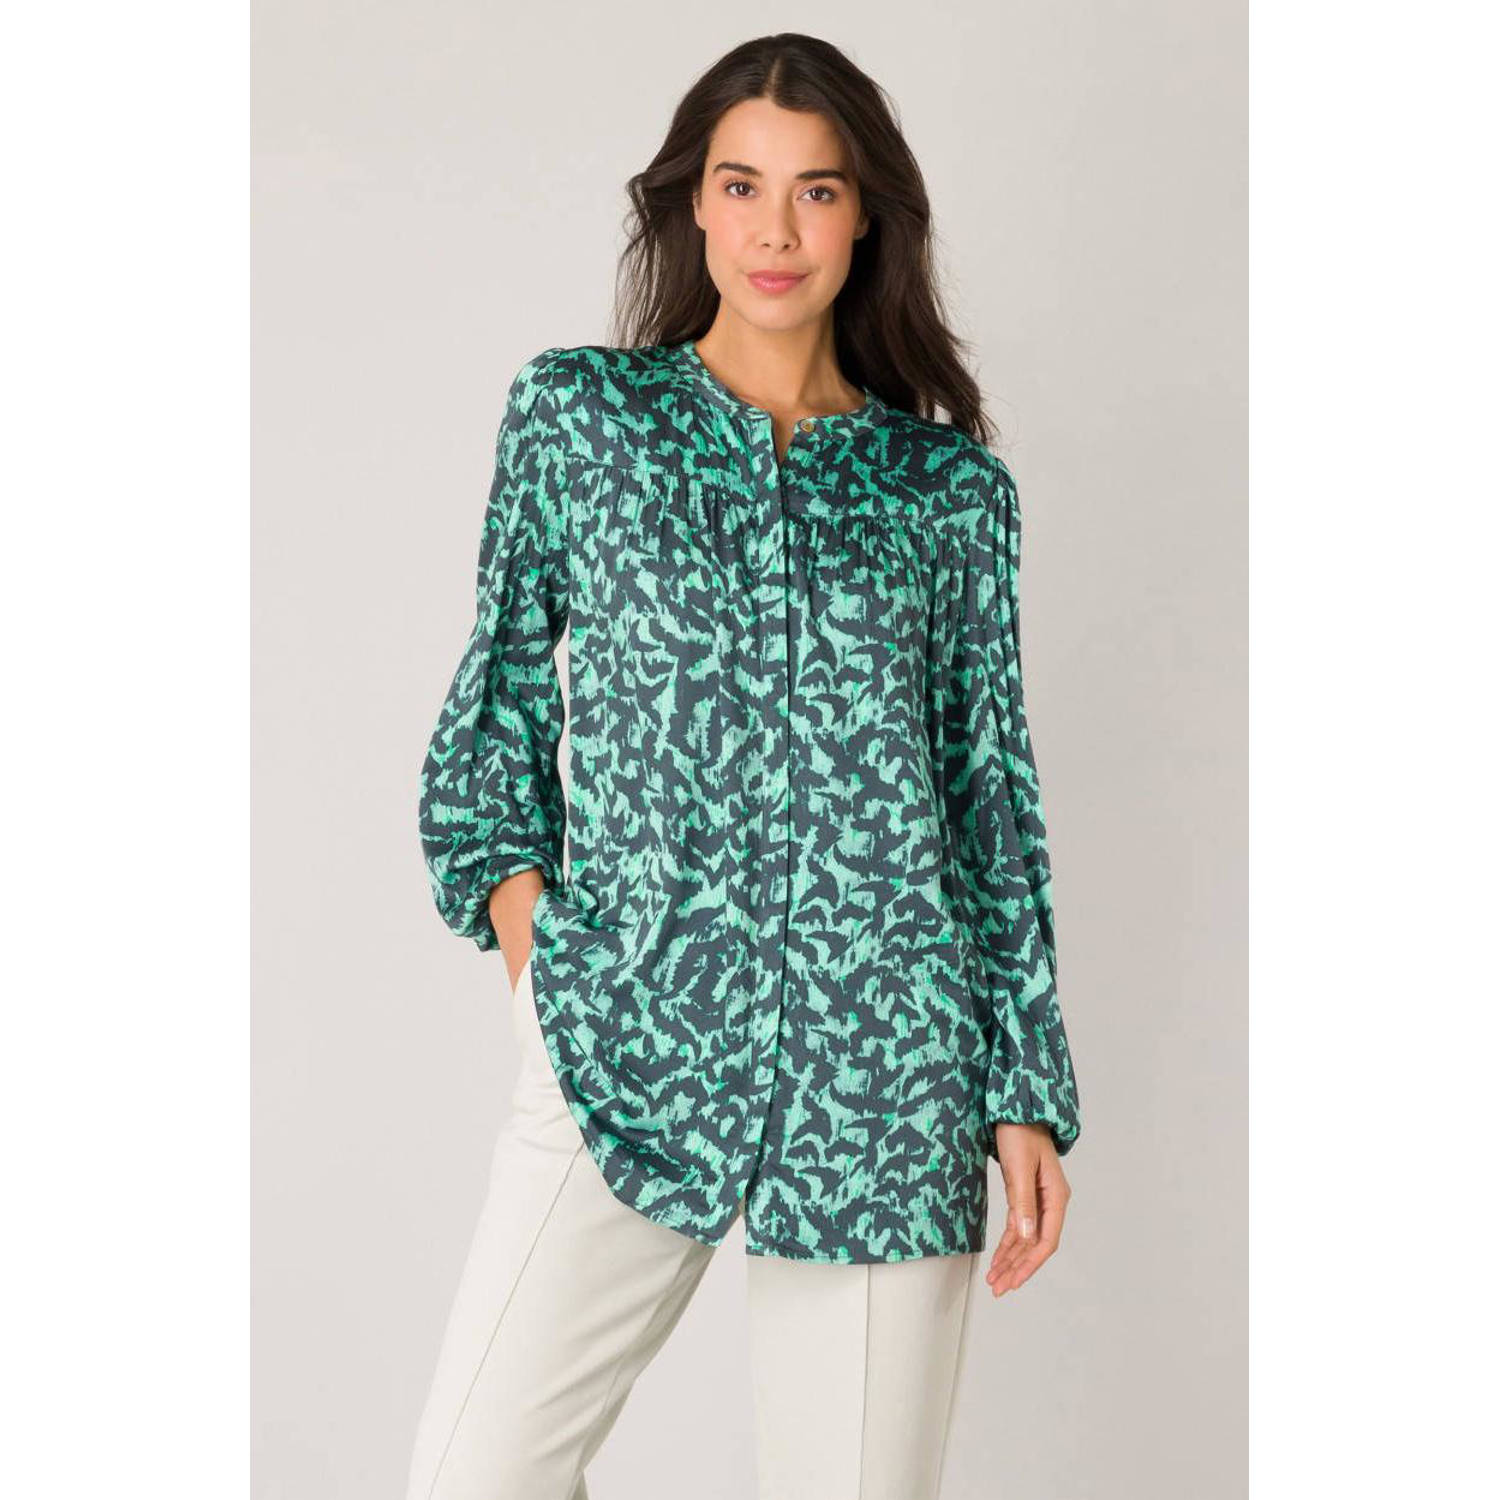 Yest blouse met all over print grijsblauw groen